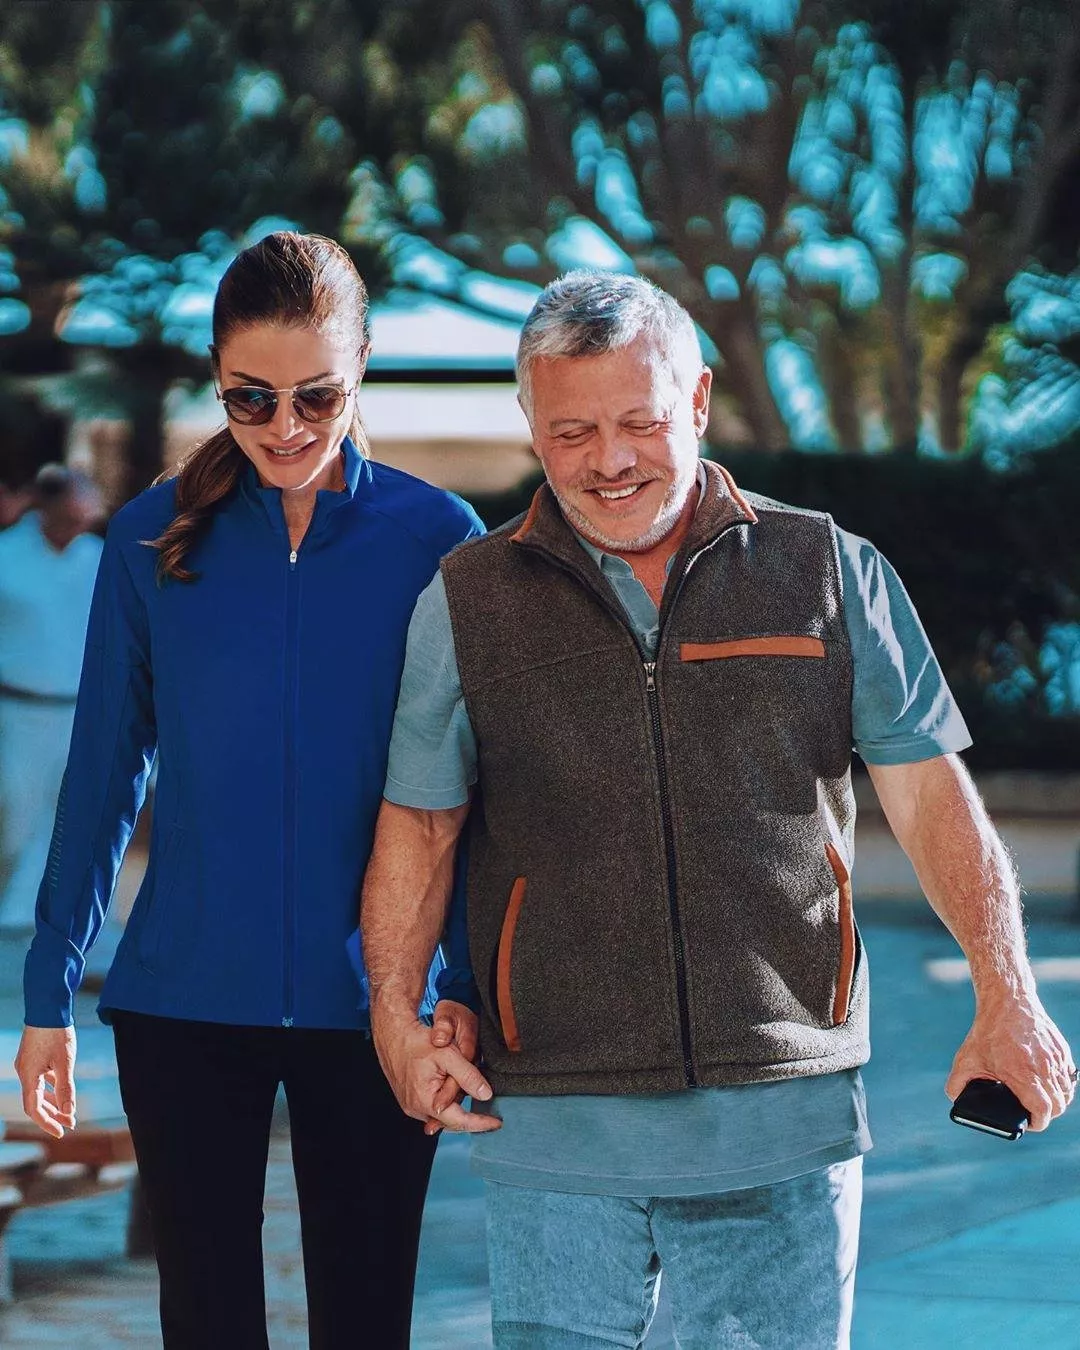 حركة واحدة تقوم بها الملكة رانيا مع زوجها تكشف الكثير عن علاقتهما